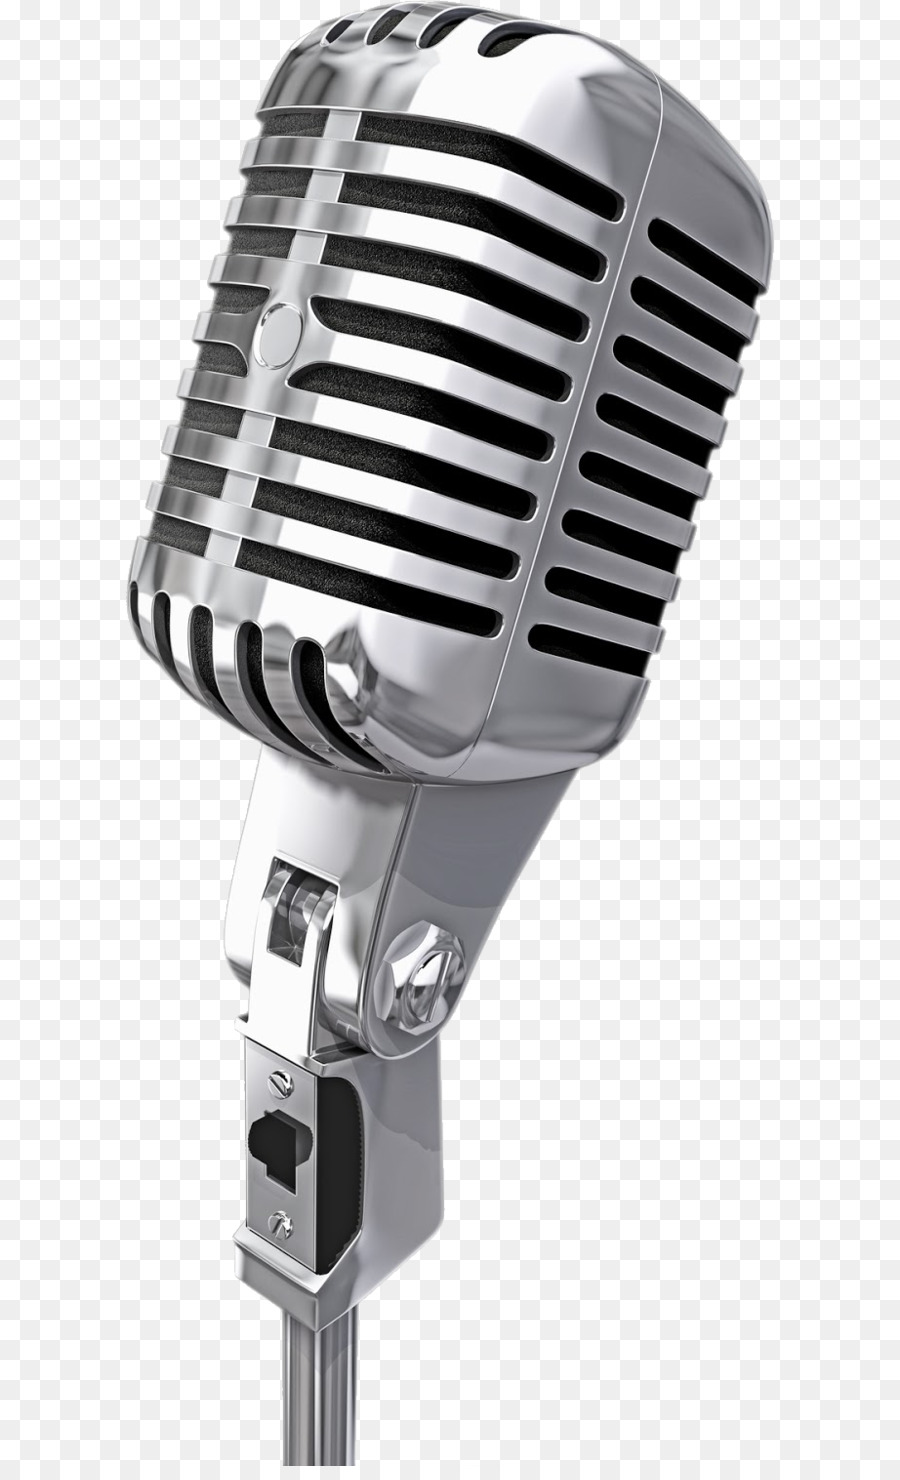 Microphone Clip nghệ thuật - Microphone Ảnh